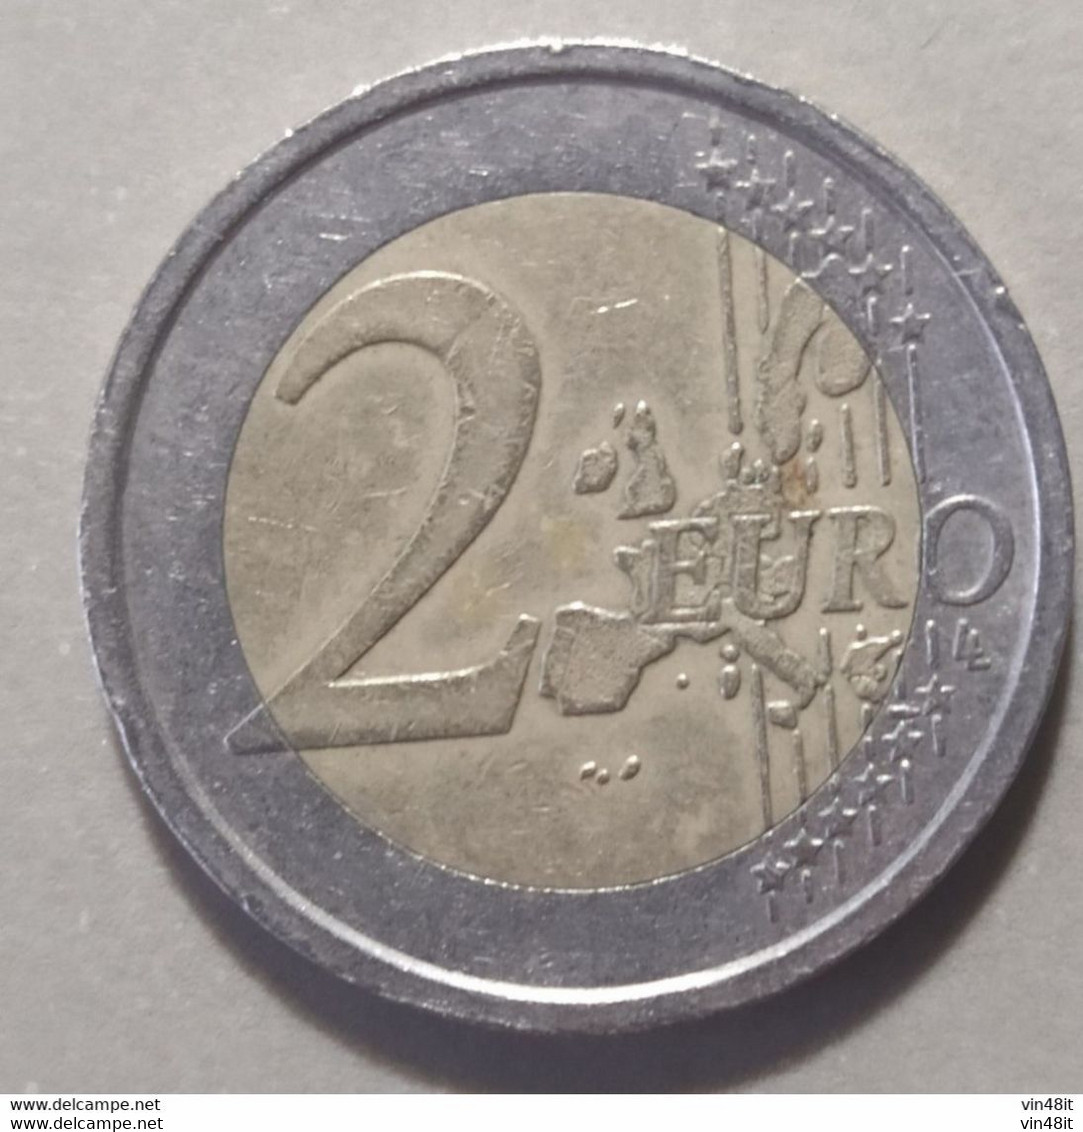 2002 - ITALIA REPUBBLICA - MONETA IN EURO -  DEL  VALORE DI 2,00  EURO - USATA - Italy